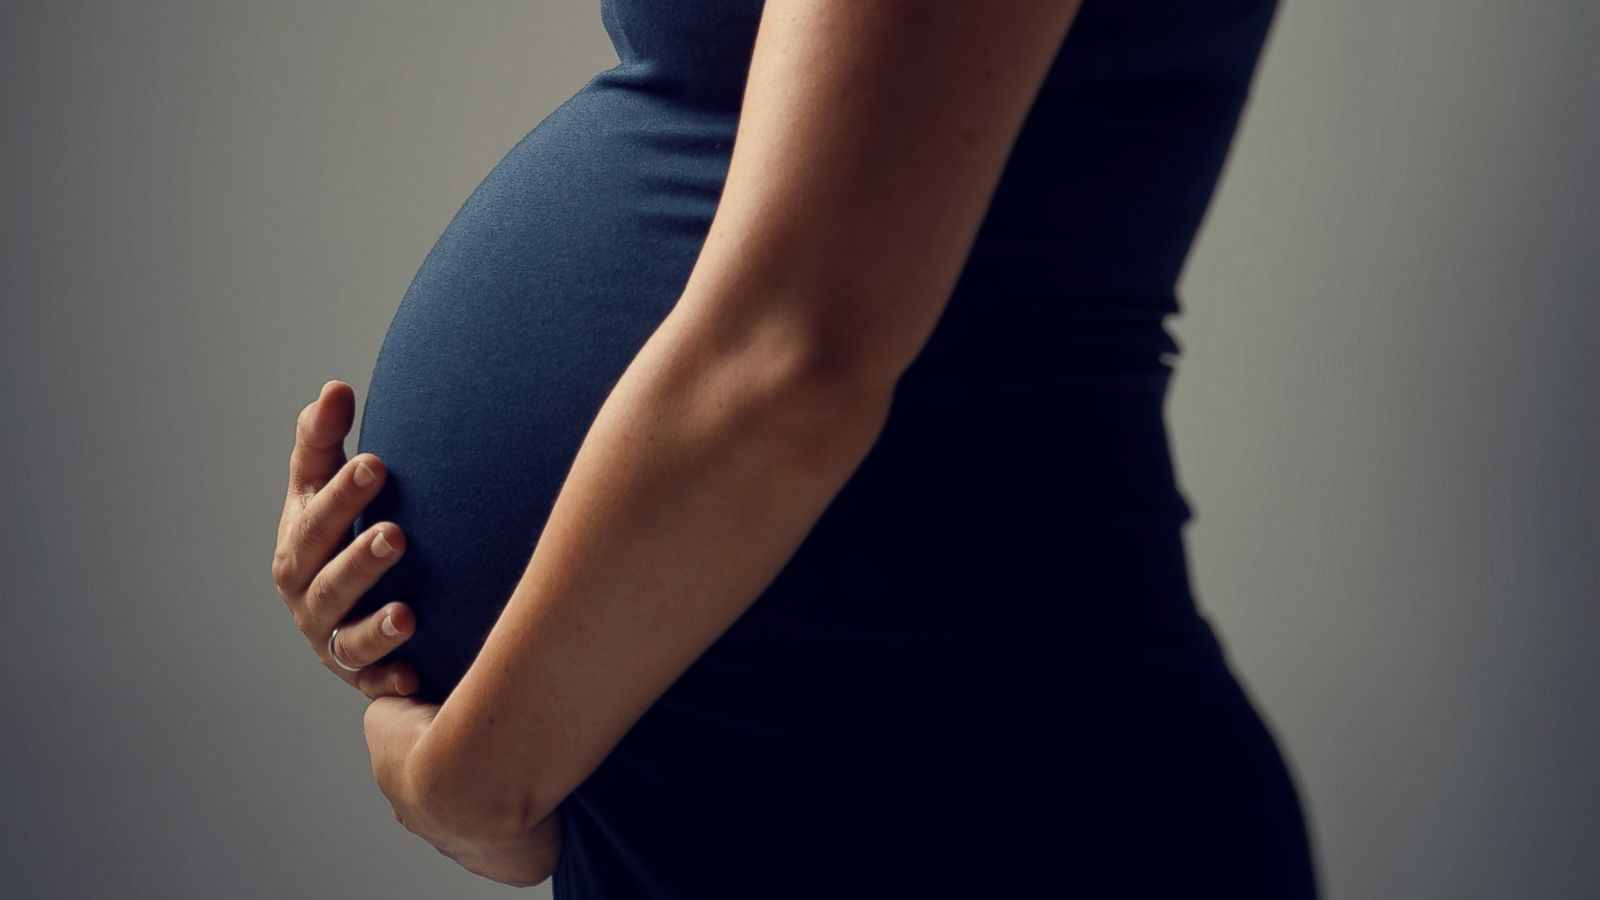 دراسة حديثة ماهي المدة التي يجب أن تنتظرها لحدوث الحمل مرة أخري بعد الإجهاض